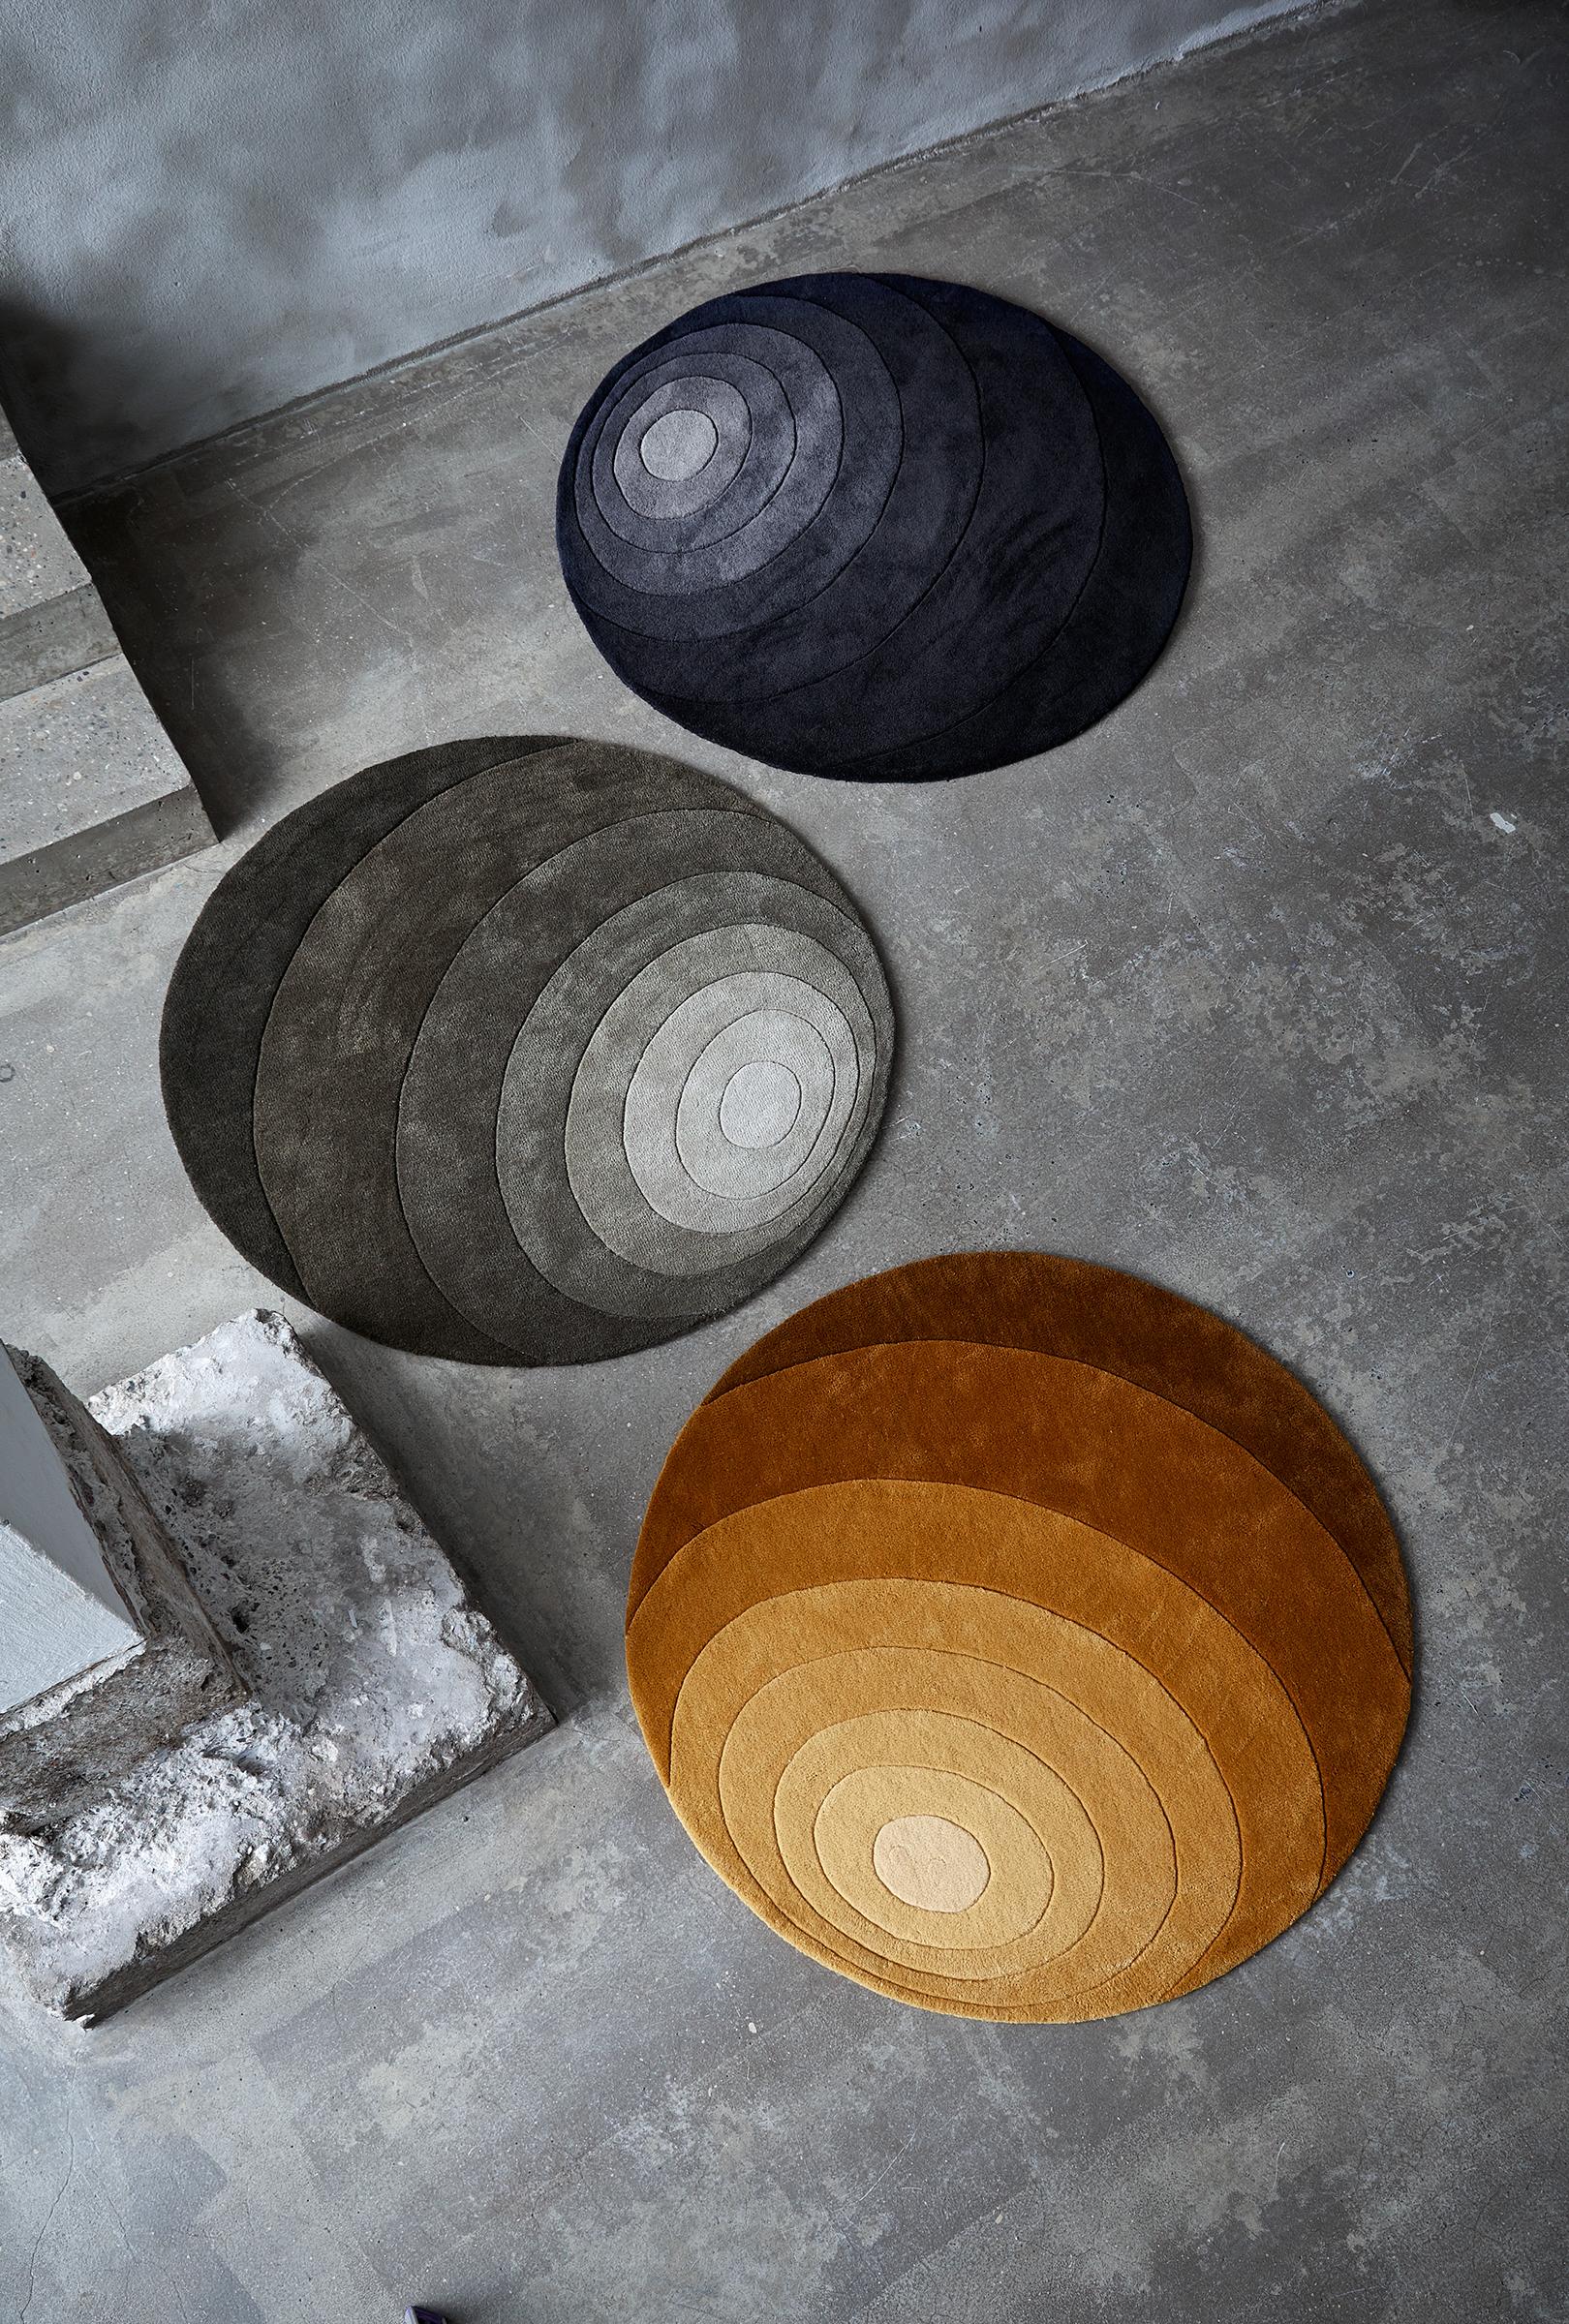 Achtfarbiger Teppich mit organischem Kreismuster, entworfen von Verner Panton.

Material:
100% neuseeländische Wolle
Handgetuftet

Farbe:
Ton-in-Ton dunkelgelb.